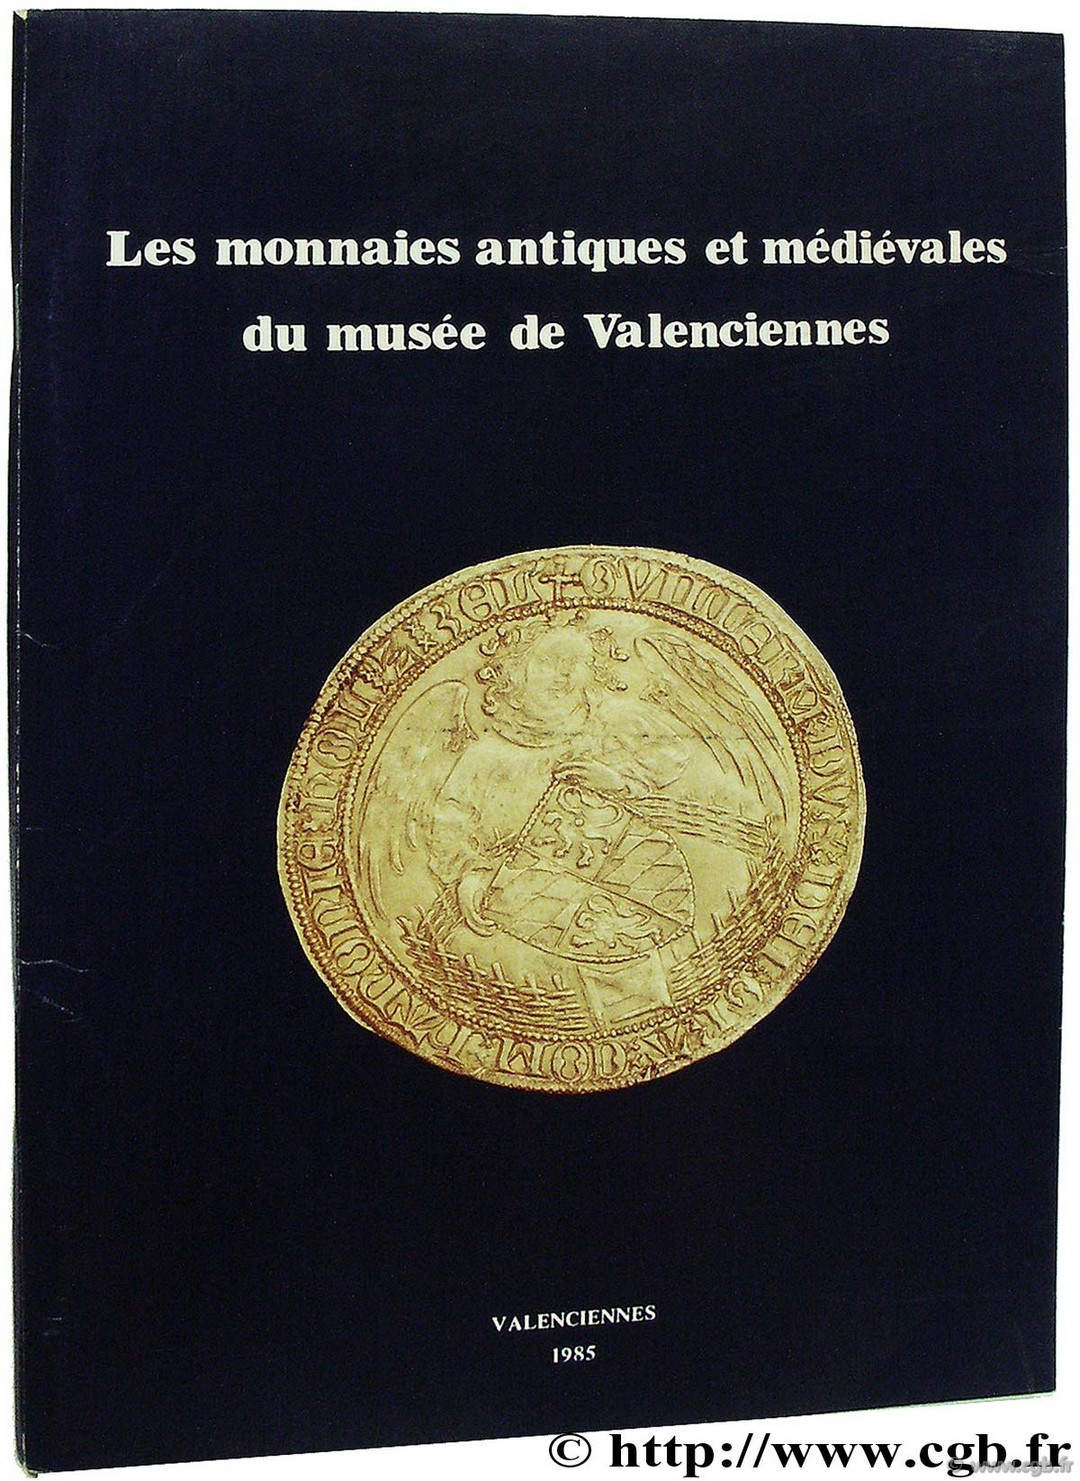 Les monnaies antiques et médiévales du musée de Valenciennes 